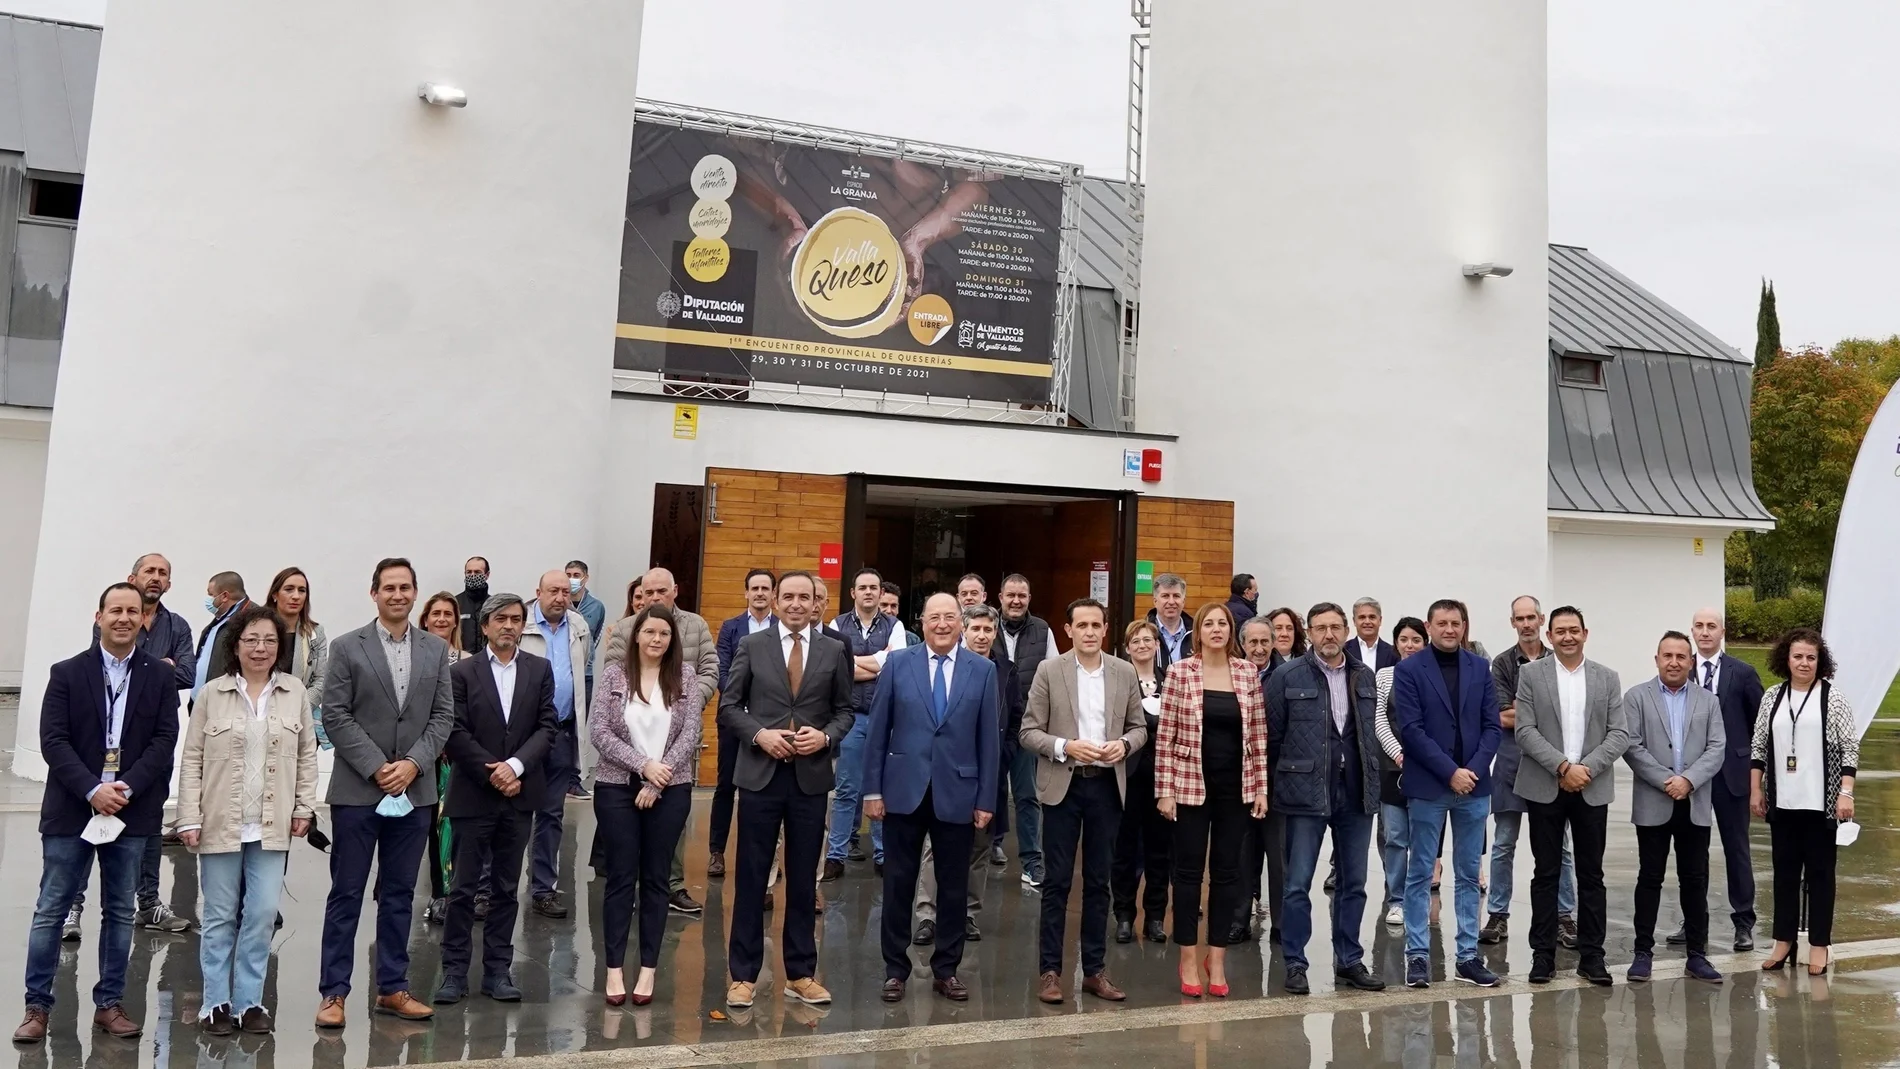 Foto de familia de los participantes en el primer encuentro "Vallaqueso" con el presidente de la Diputación de Valladolid, Conrado Íscar, y el bodeguero Carlos Moro